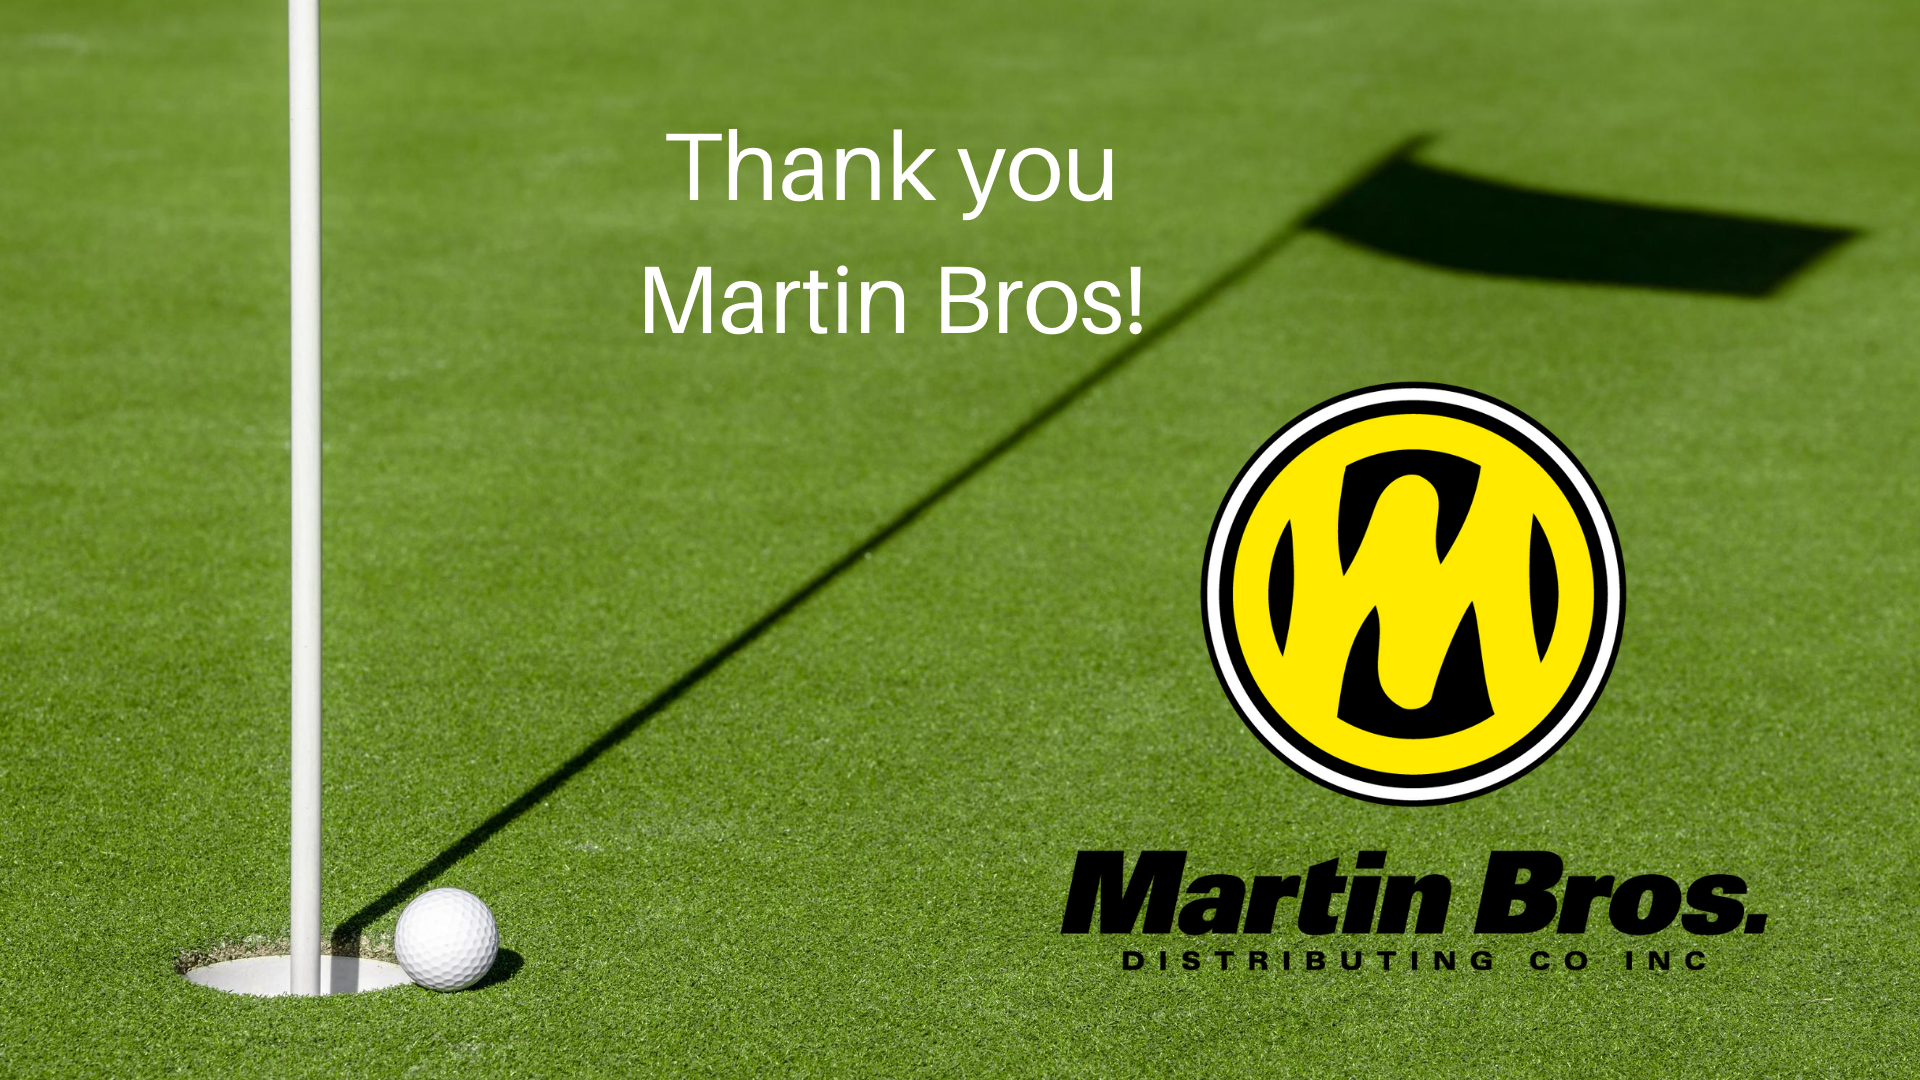 Martin Bros. 